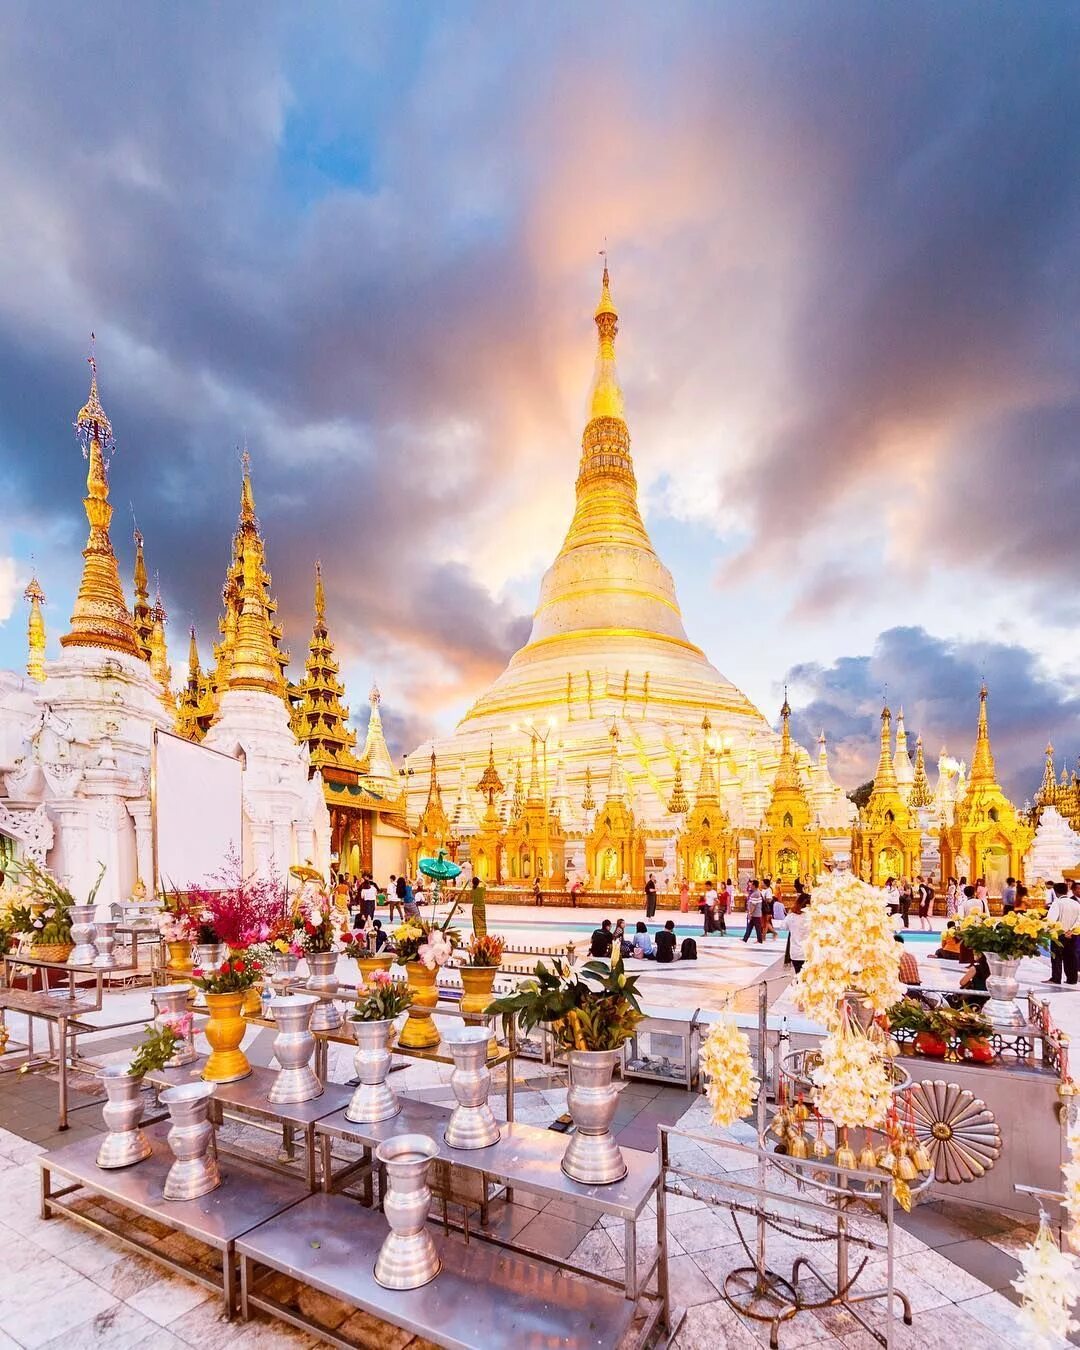 Шведагон Мьянма. Пагода Шведагон Мьянма. Золотая ступа Шведагон. Шведагон внутри.